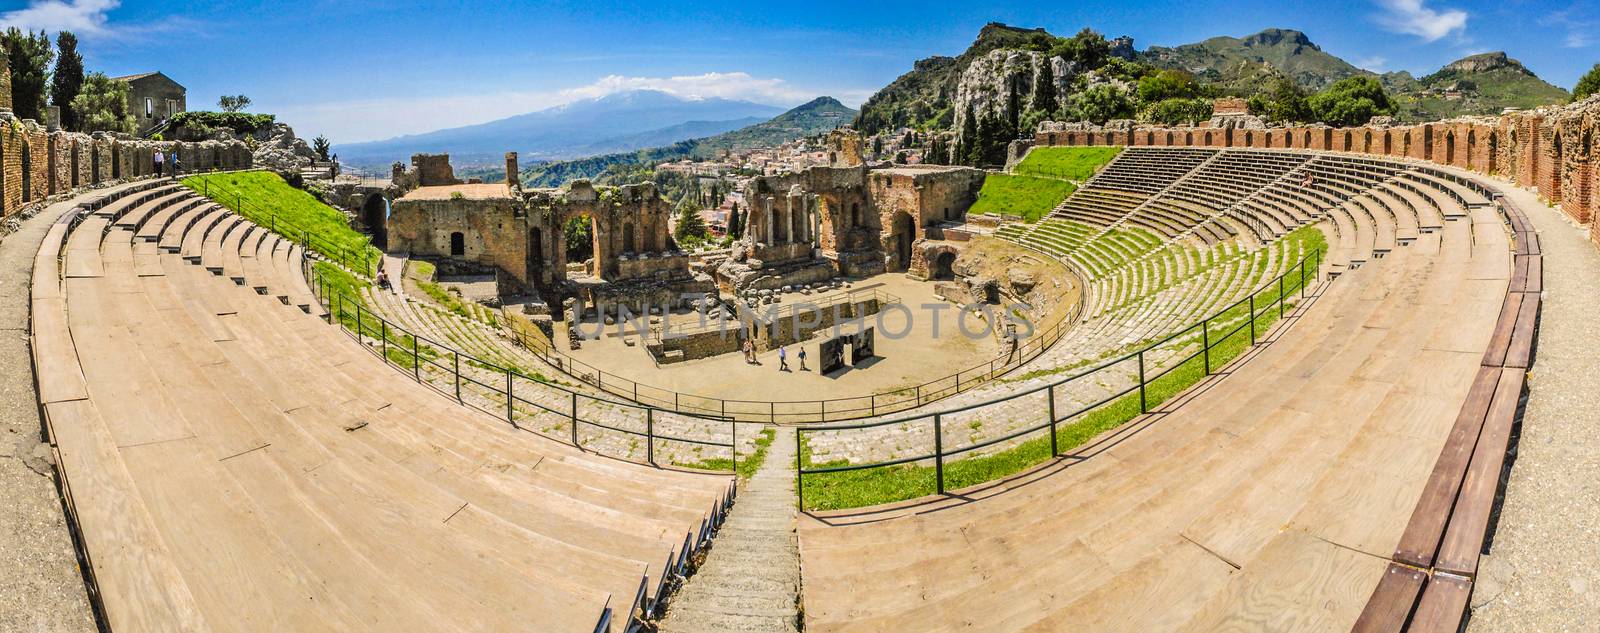 The ancient theatre in Taormina by rarrarorro